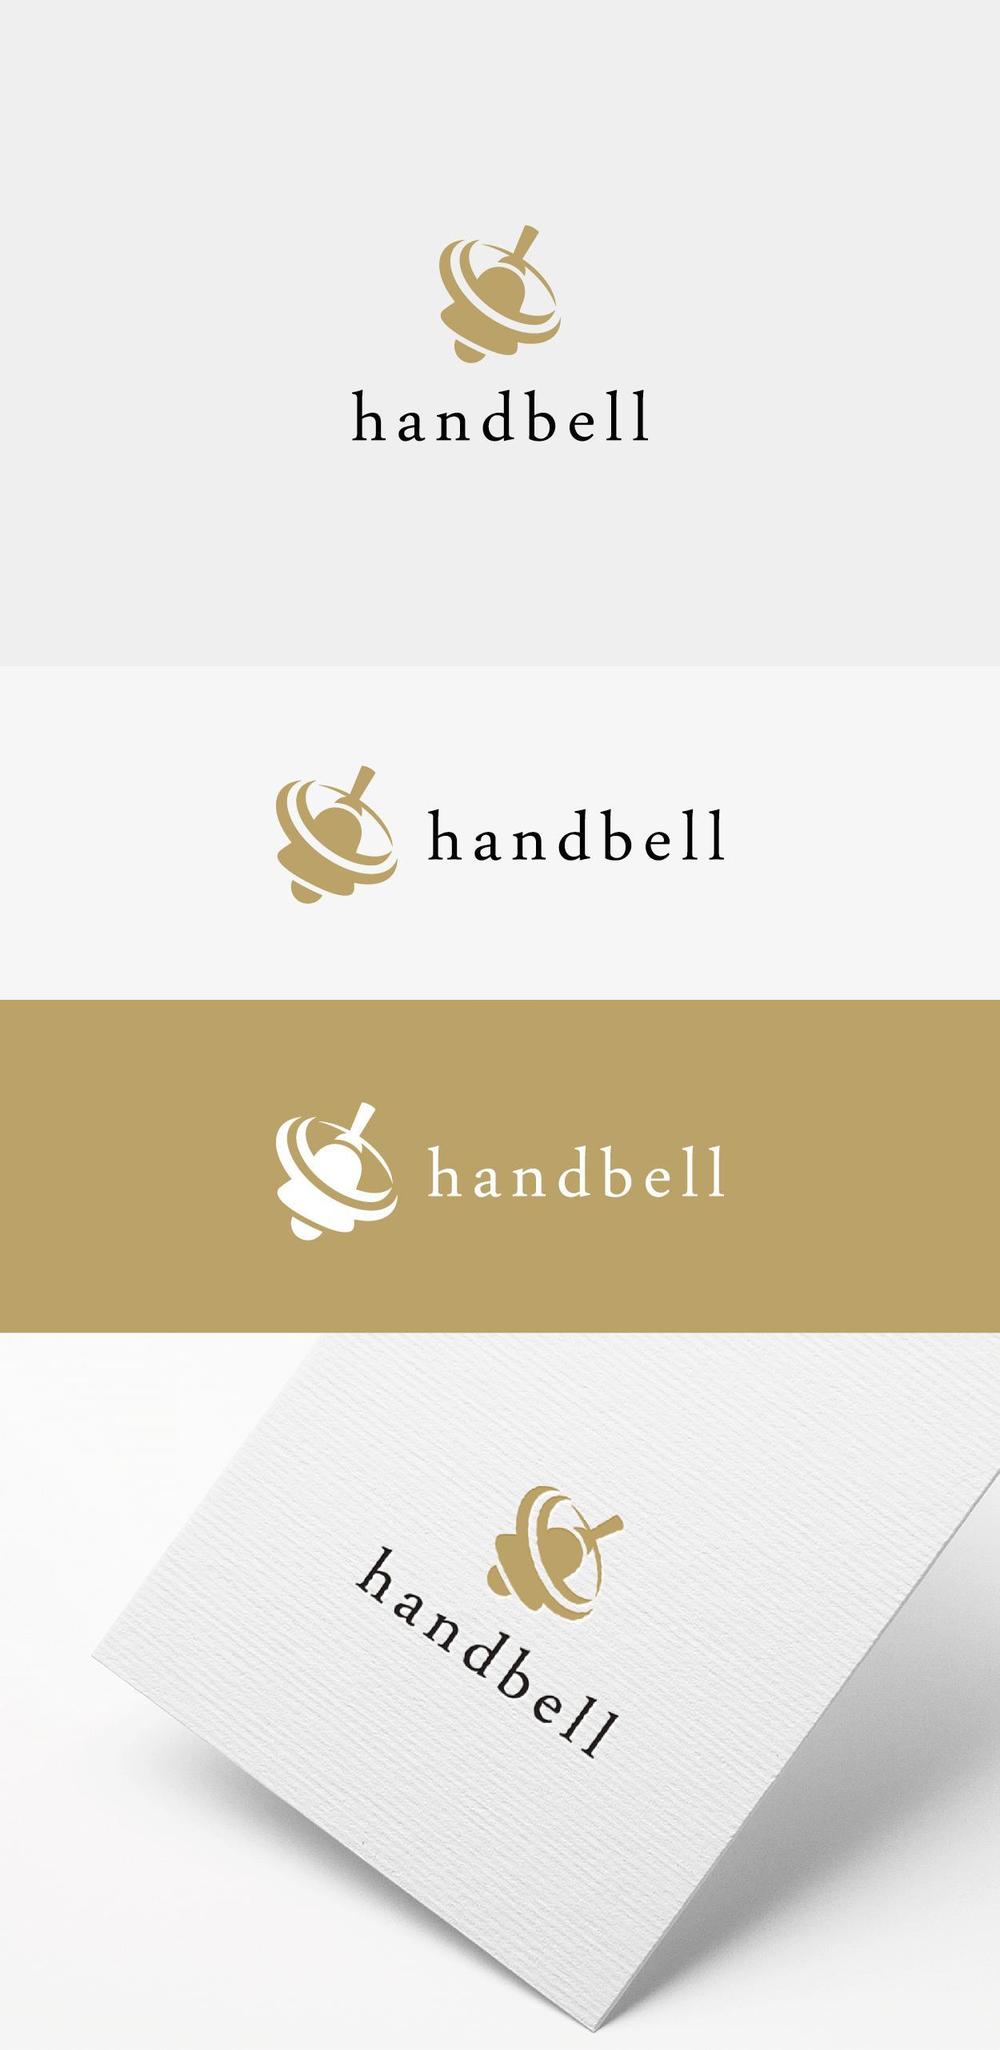 handbell-01.jpg